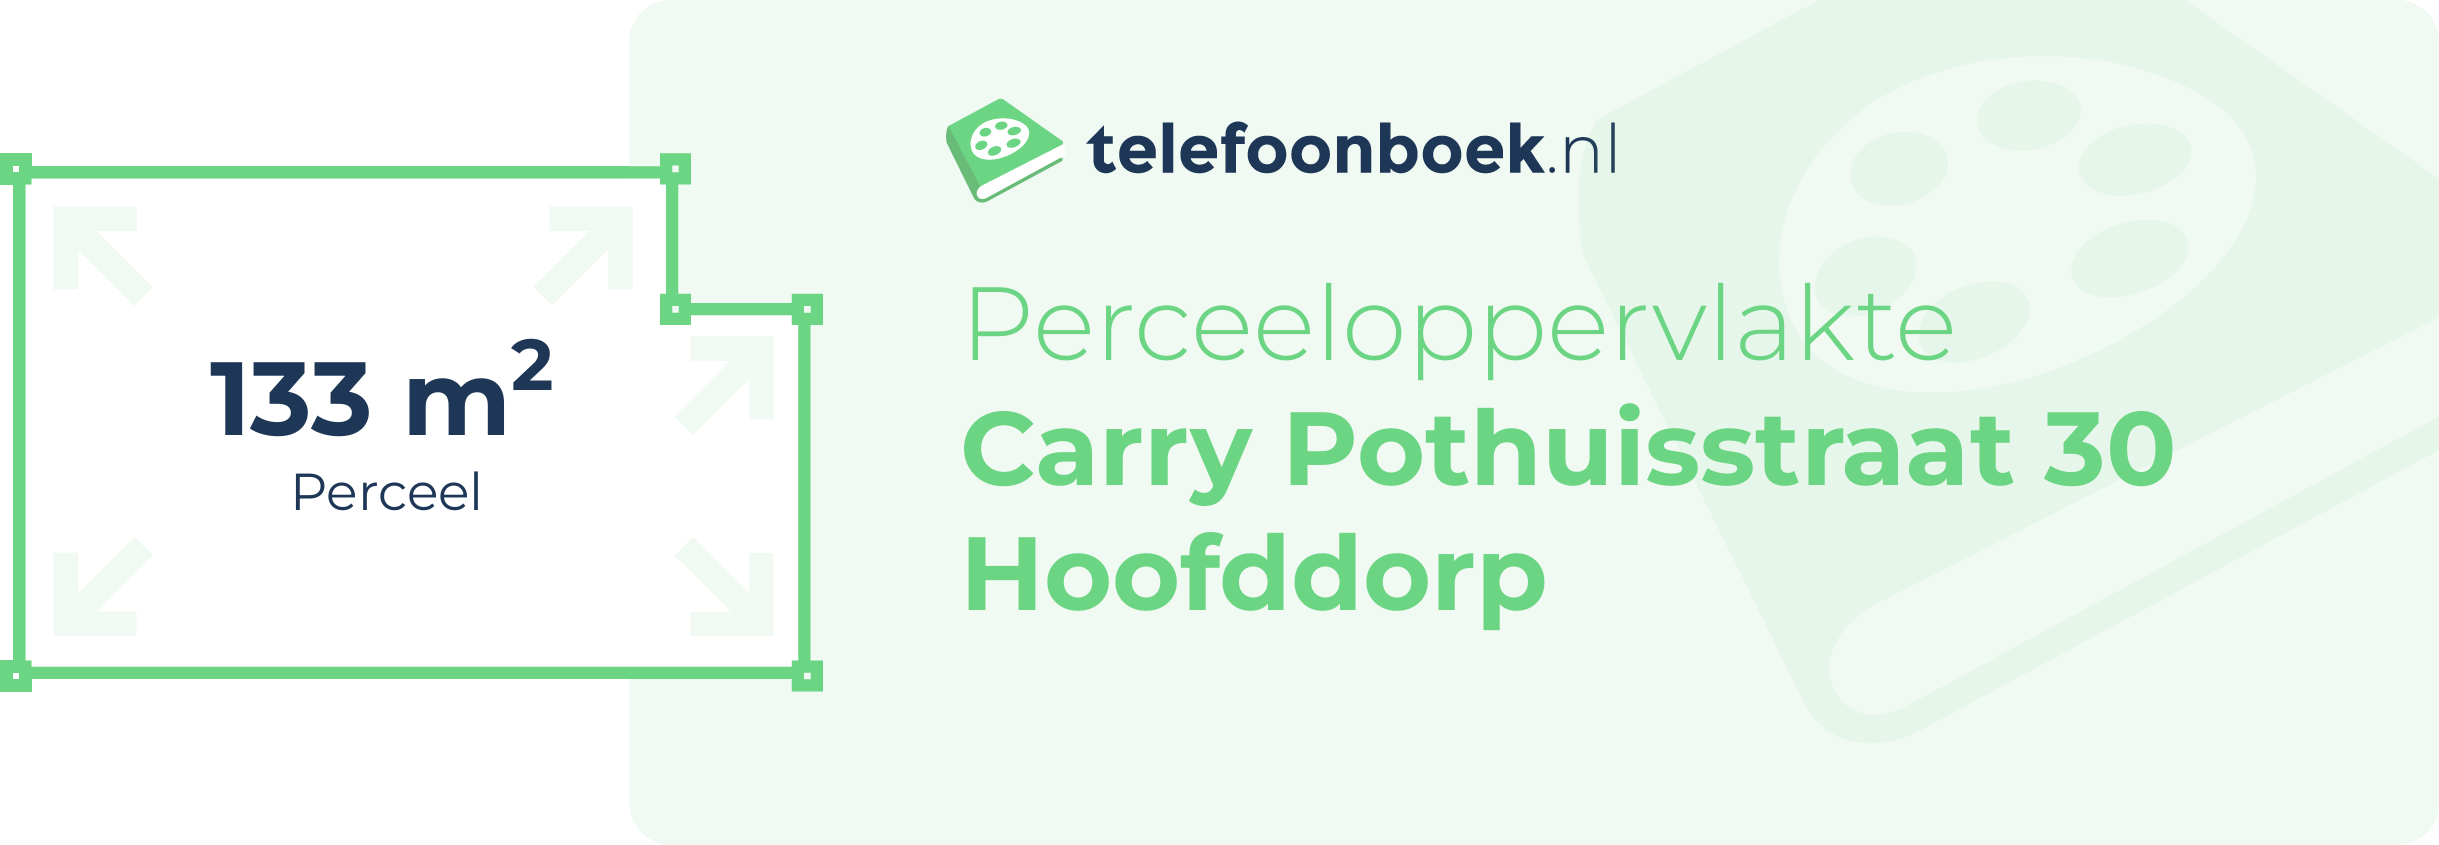 Perceeloppervlakte Carry Pothuisstraat 30 Hoofddorp